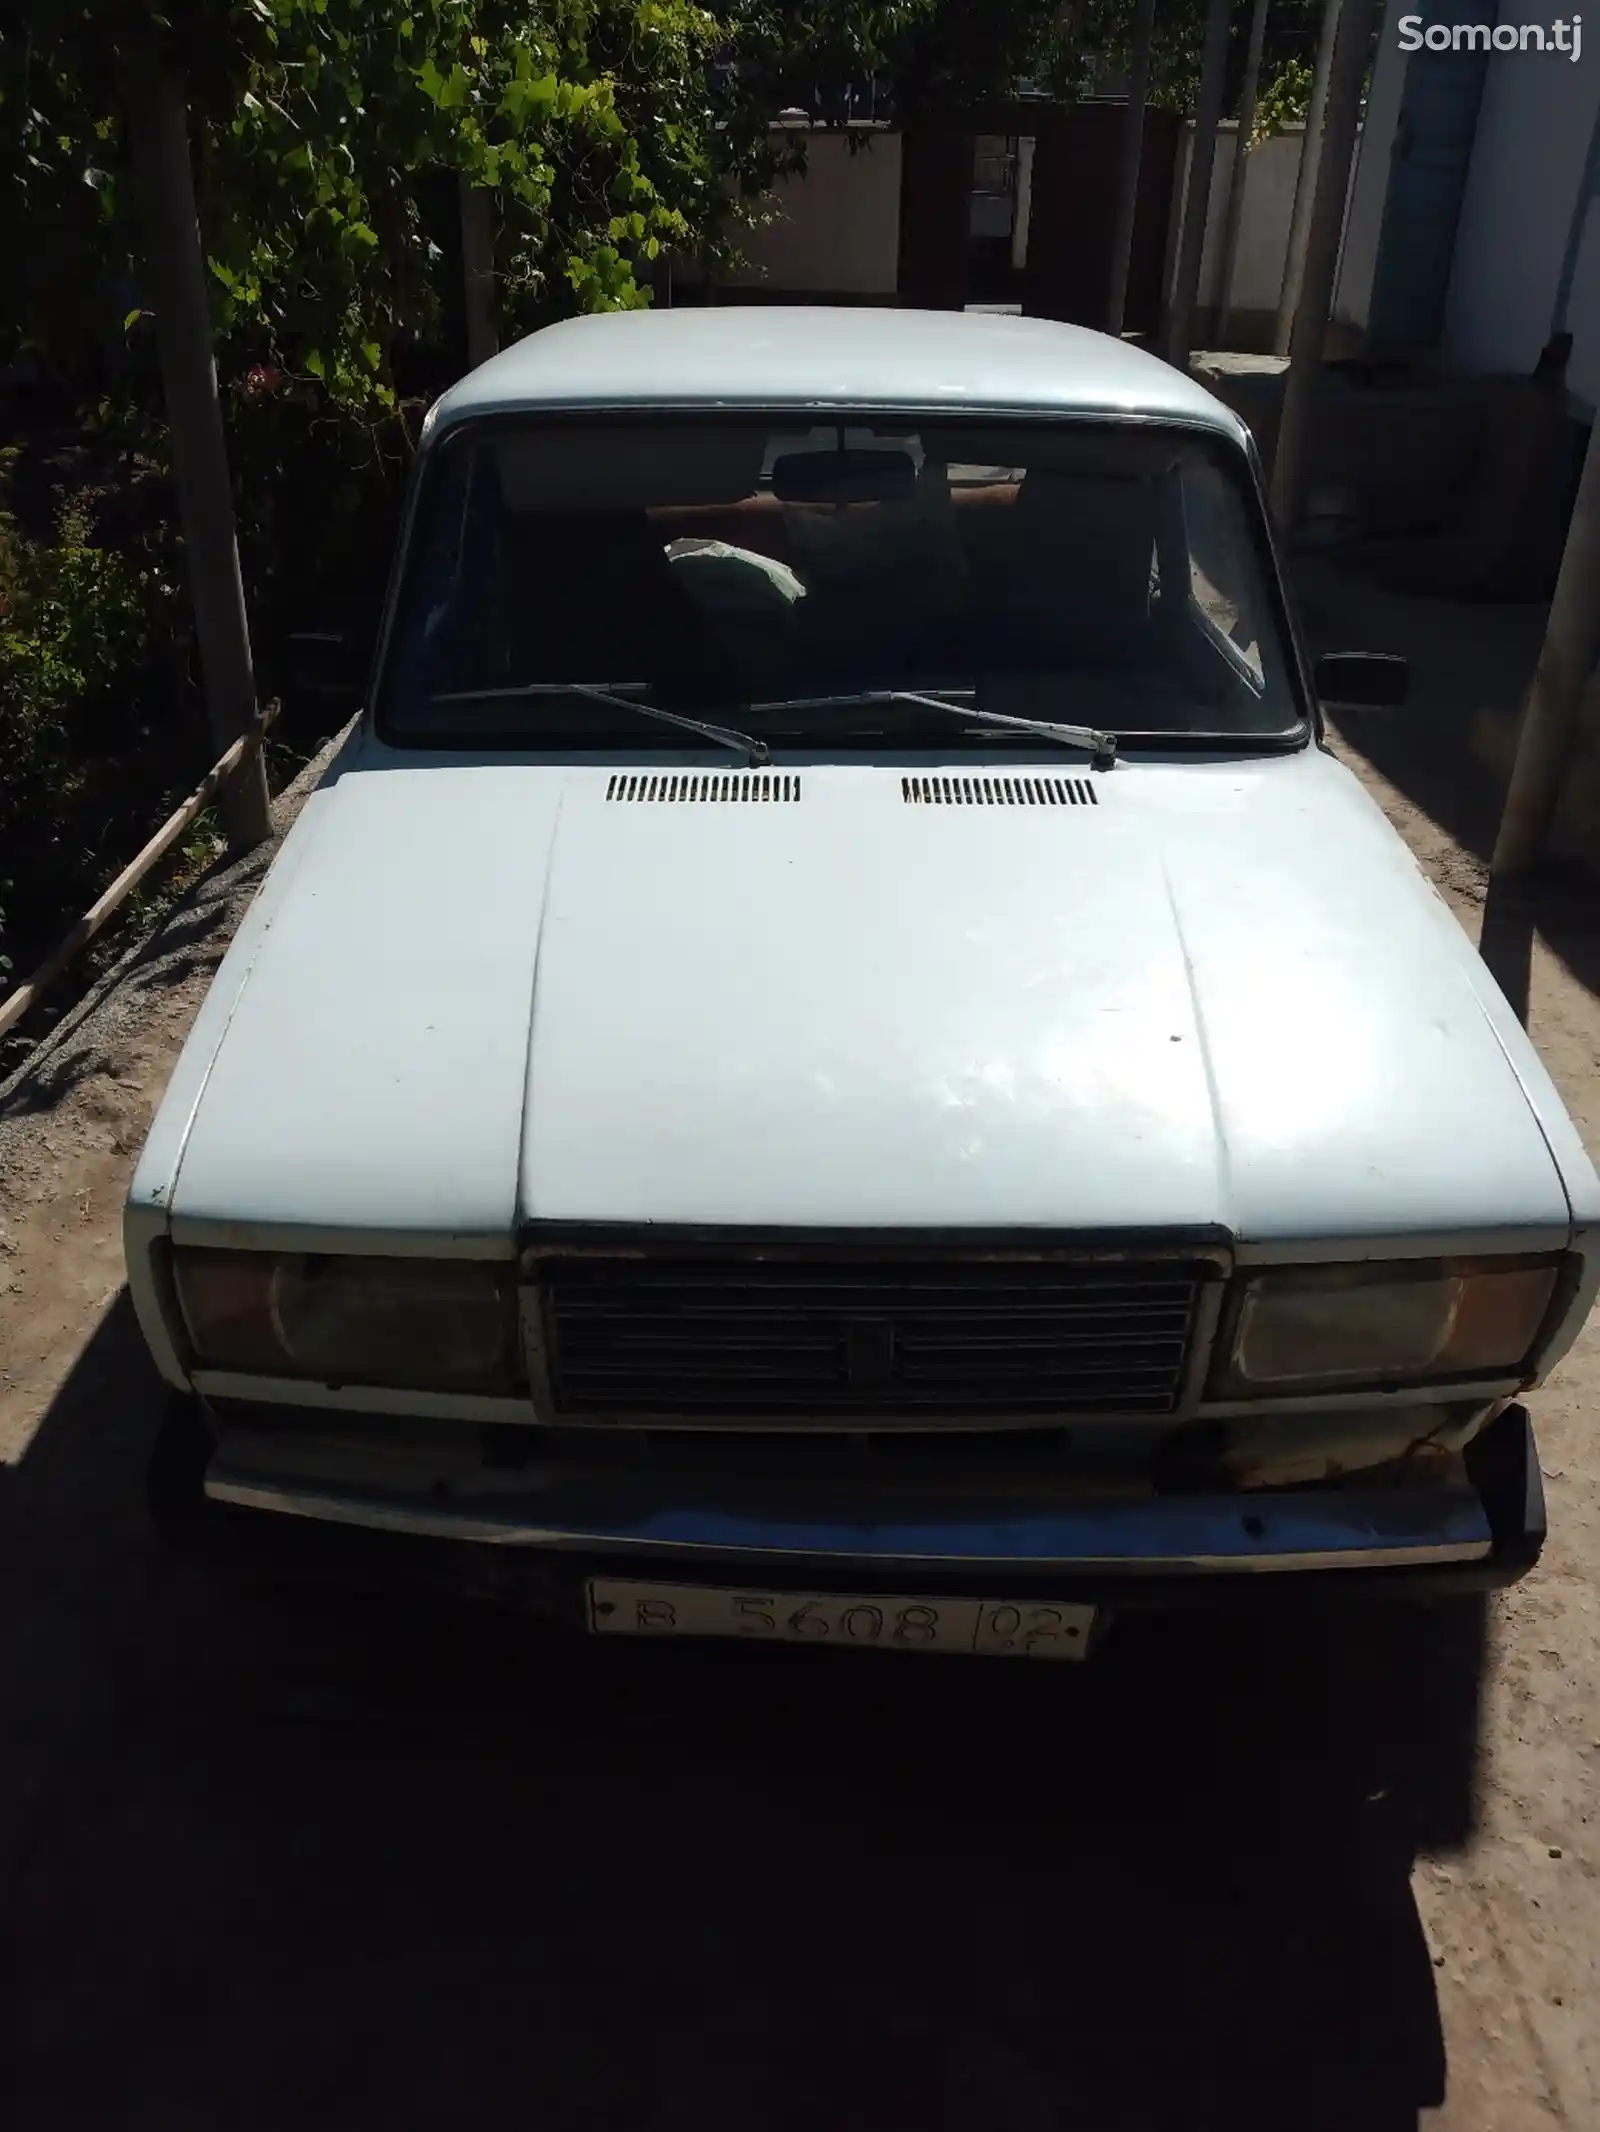 ВАЗ 2107, 1984-1